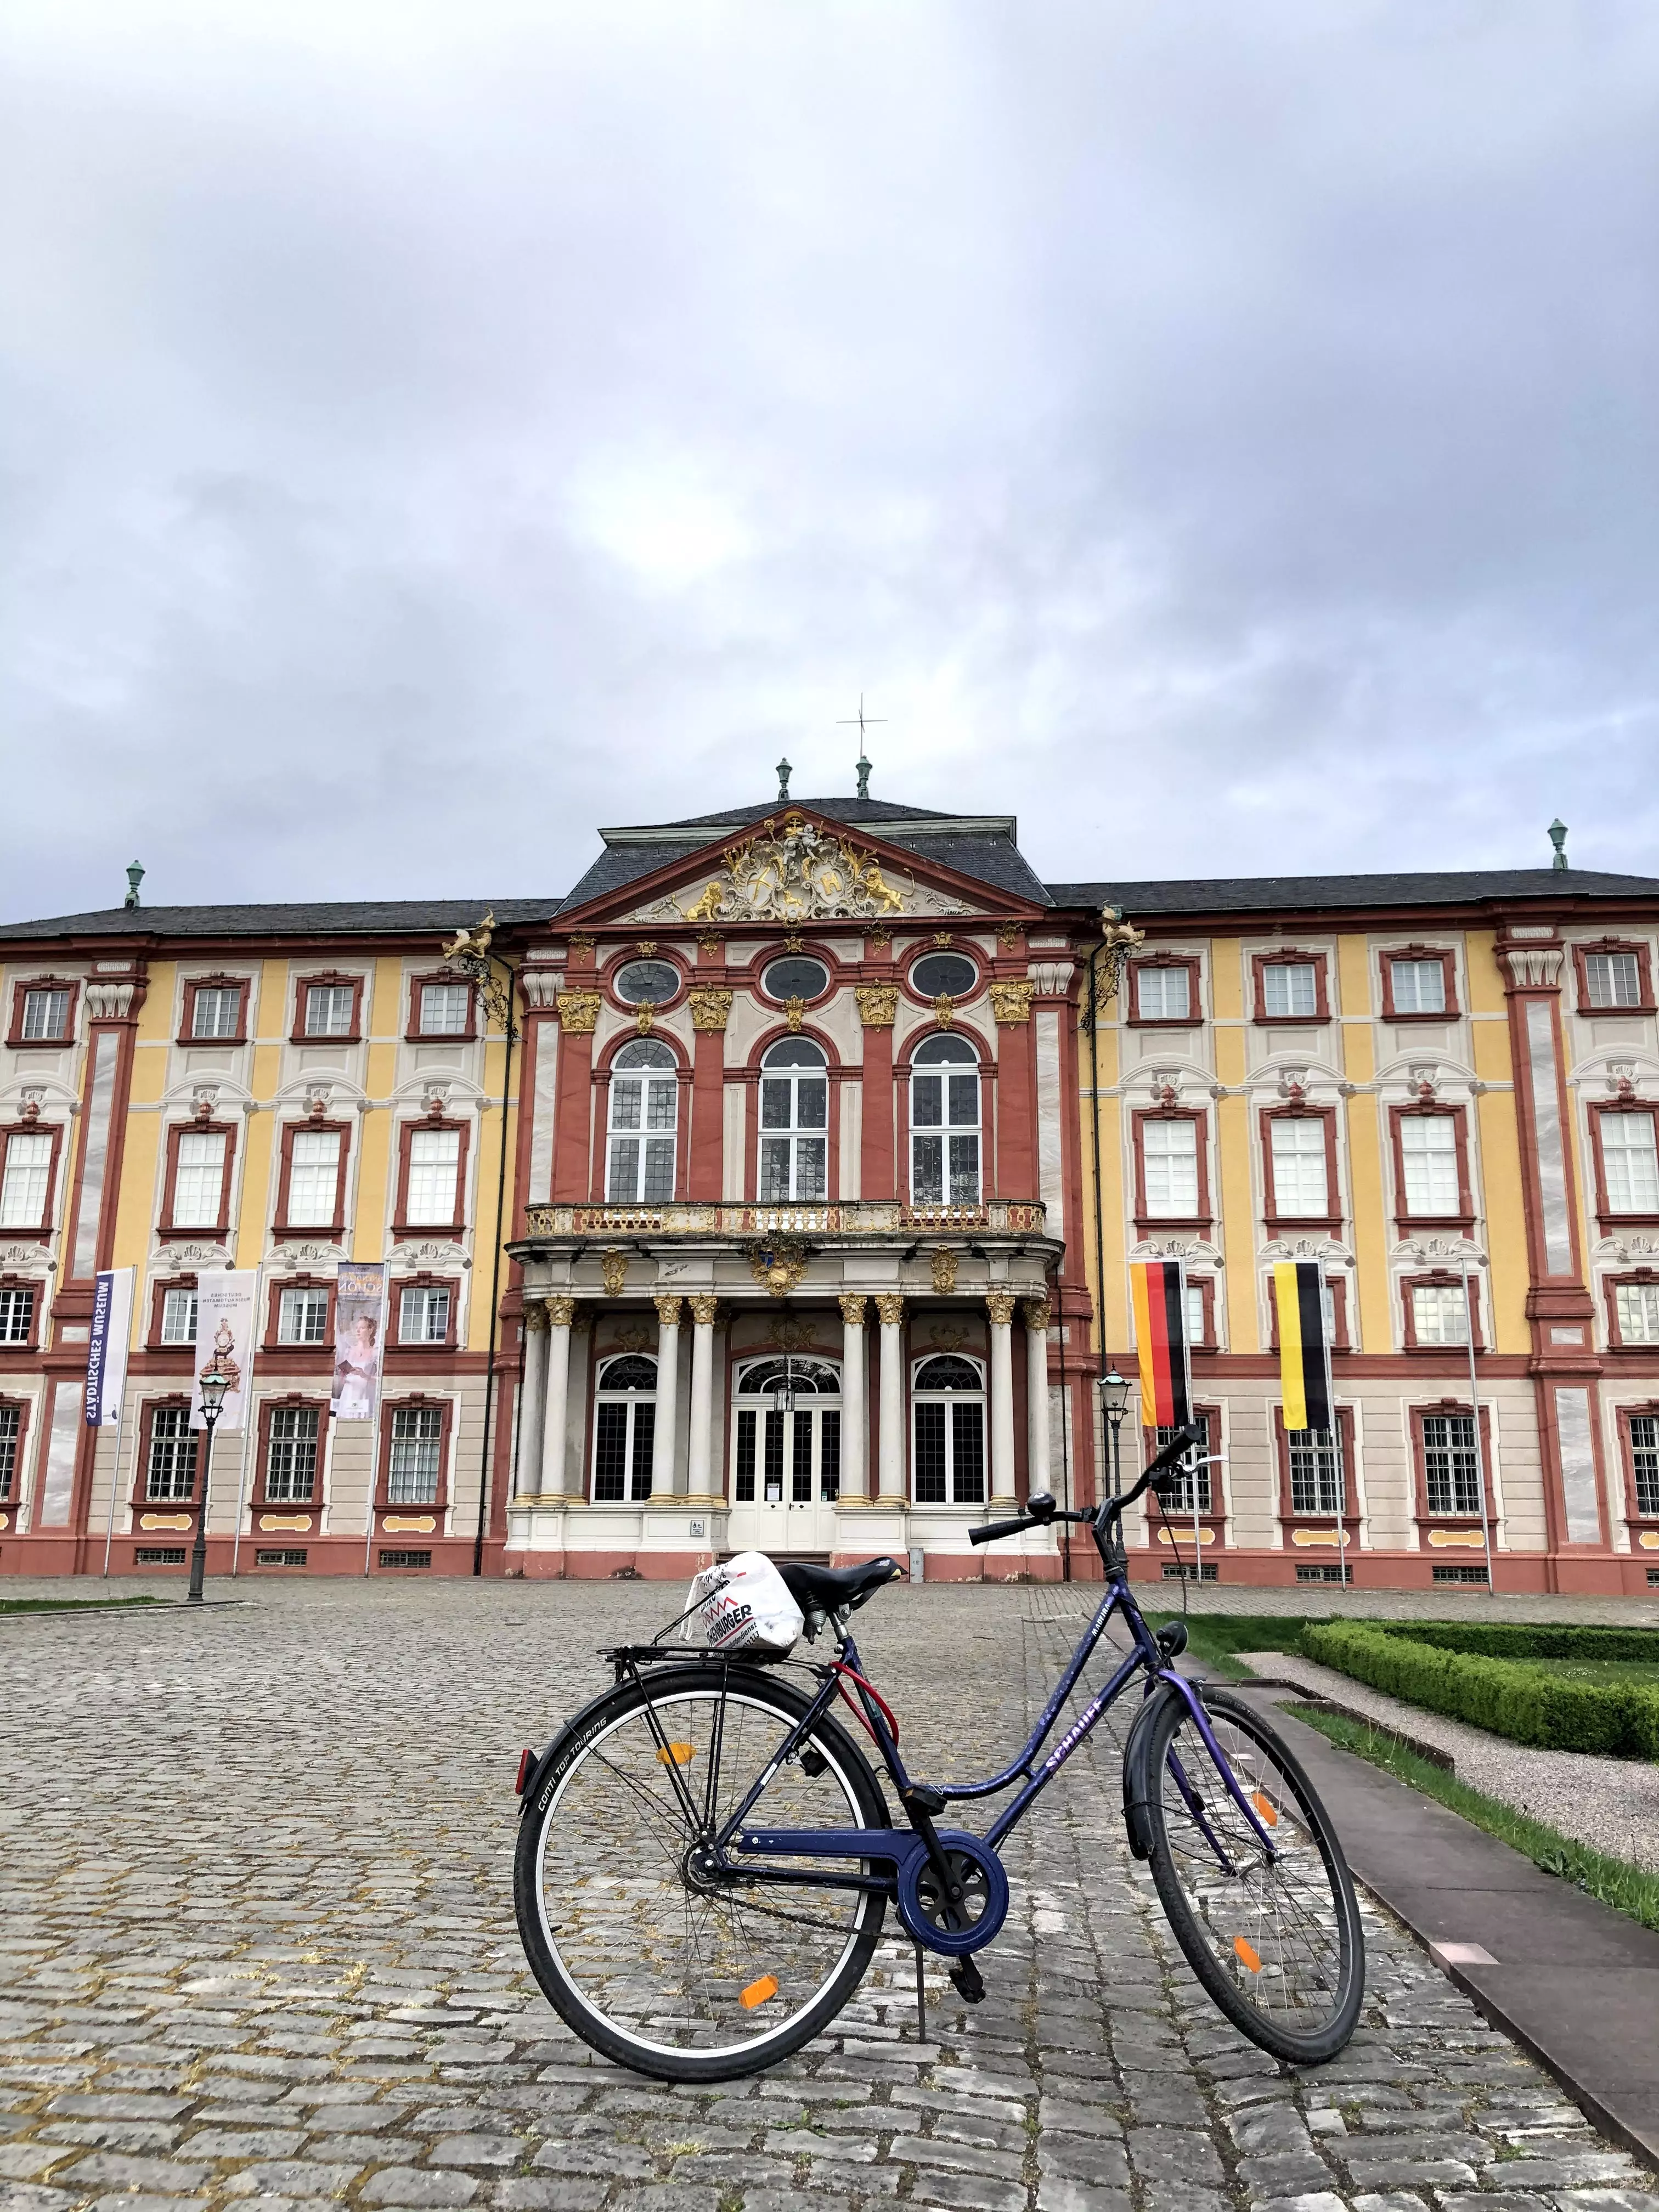 Mình và chiến hữu ở Bruchsal - nơi cách thành phố Karlsruhe 26km. Tổng cộng mình đã cùng người bạn đạp xe qua đây chơi là 52 km hoho.